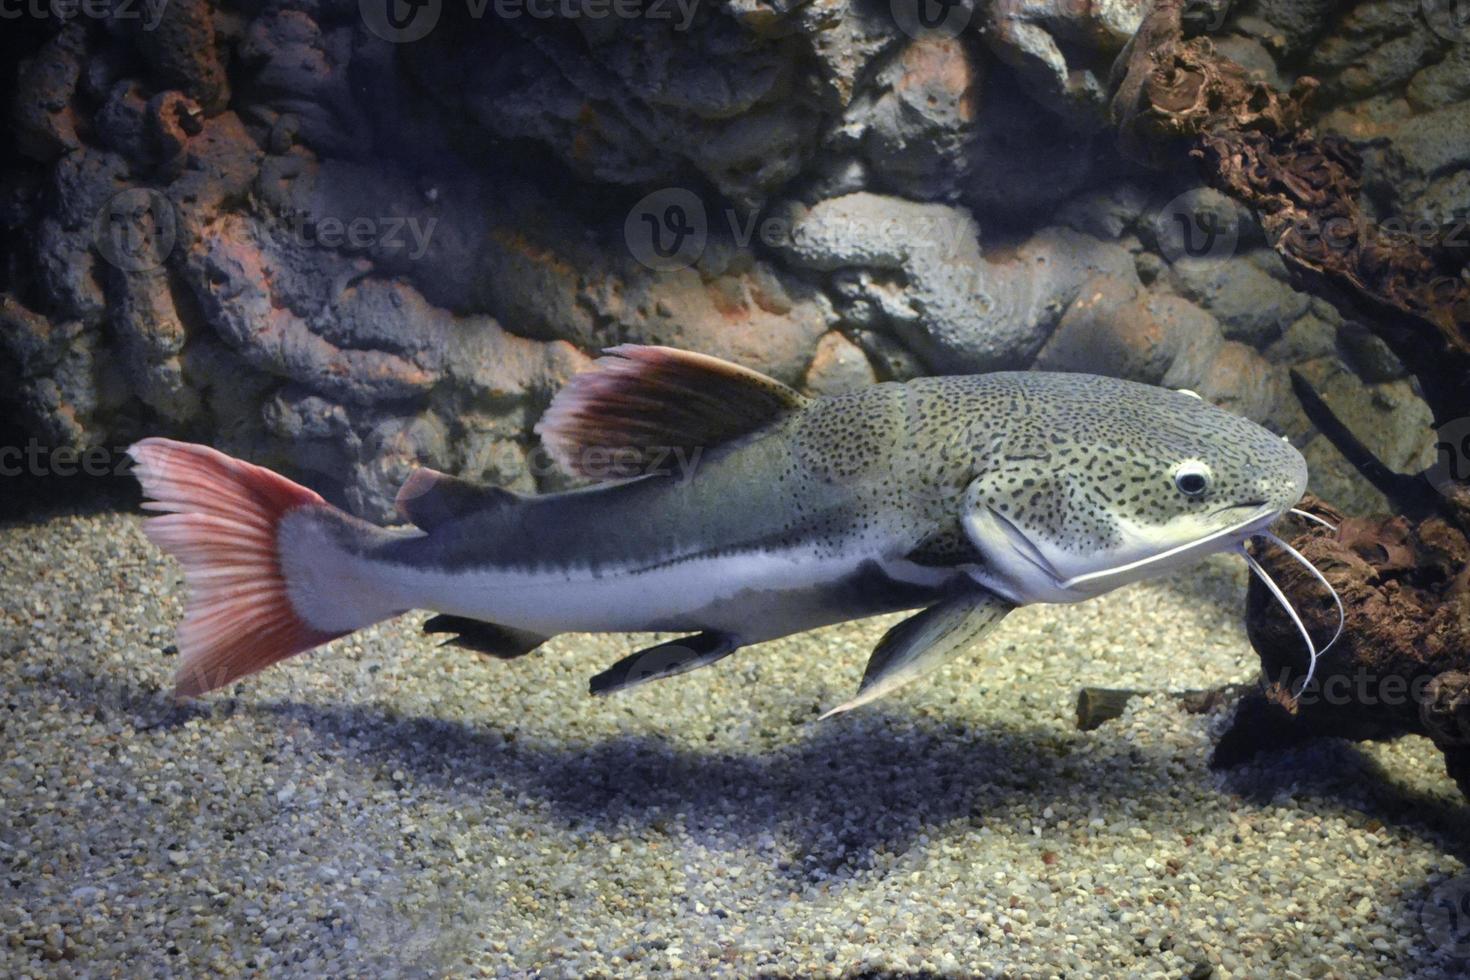 phractocephalus hemioliopterus - poisson-chat gris, tacheté, à queue rouge photo